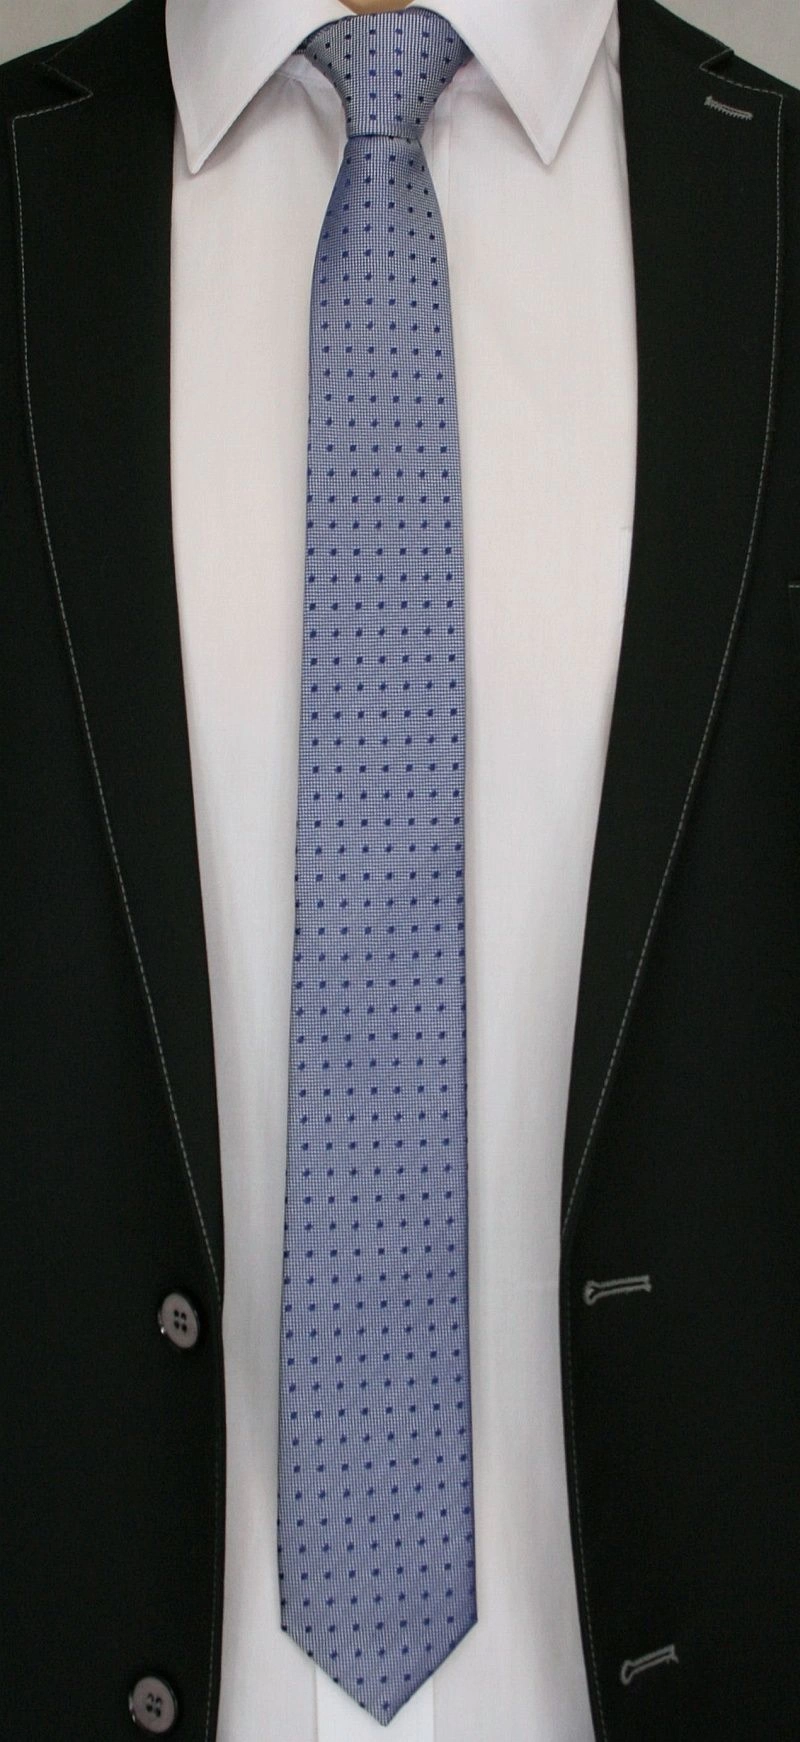 Krawat Męski, Niebiesko-Stalowy w Groszki - Angelo di Monti